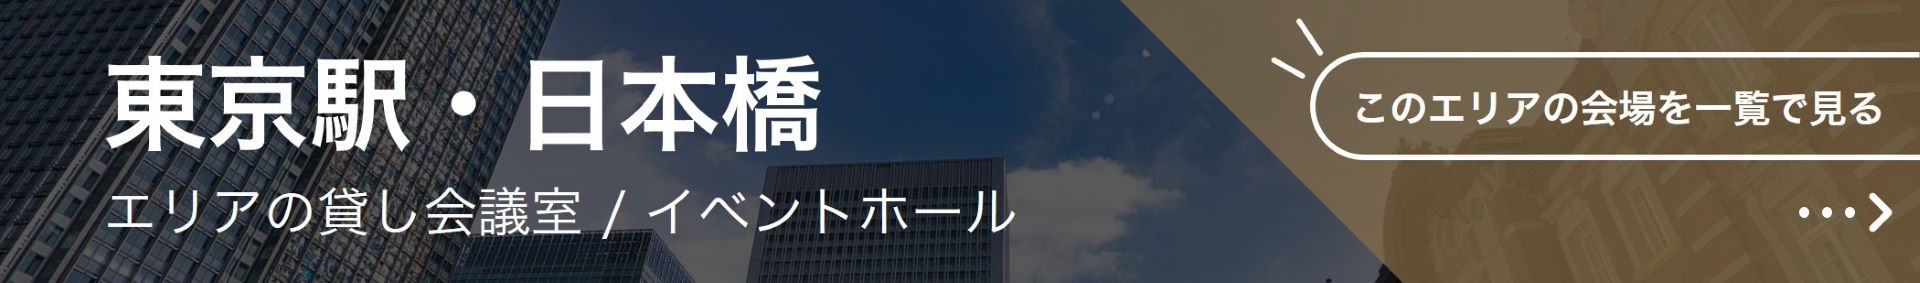 東京駅・日本橋のイベントホール・貸しホール